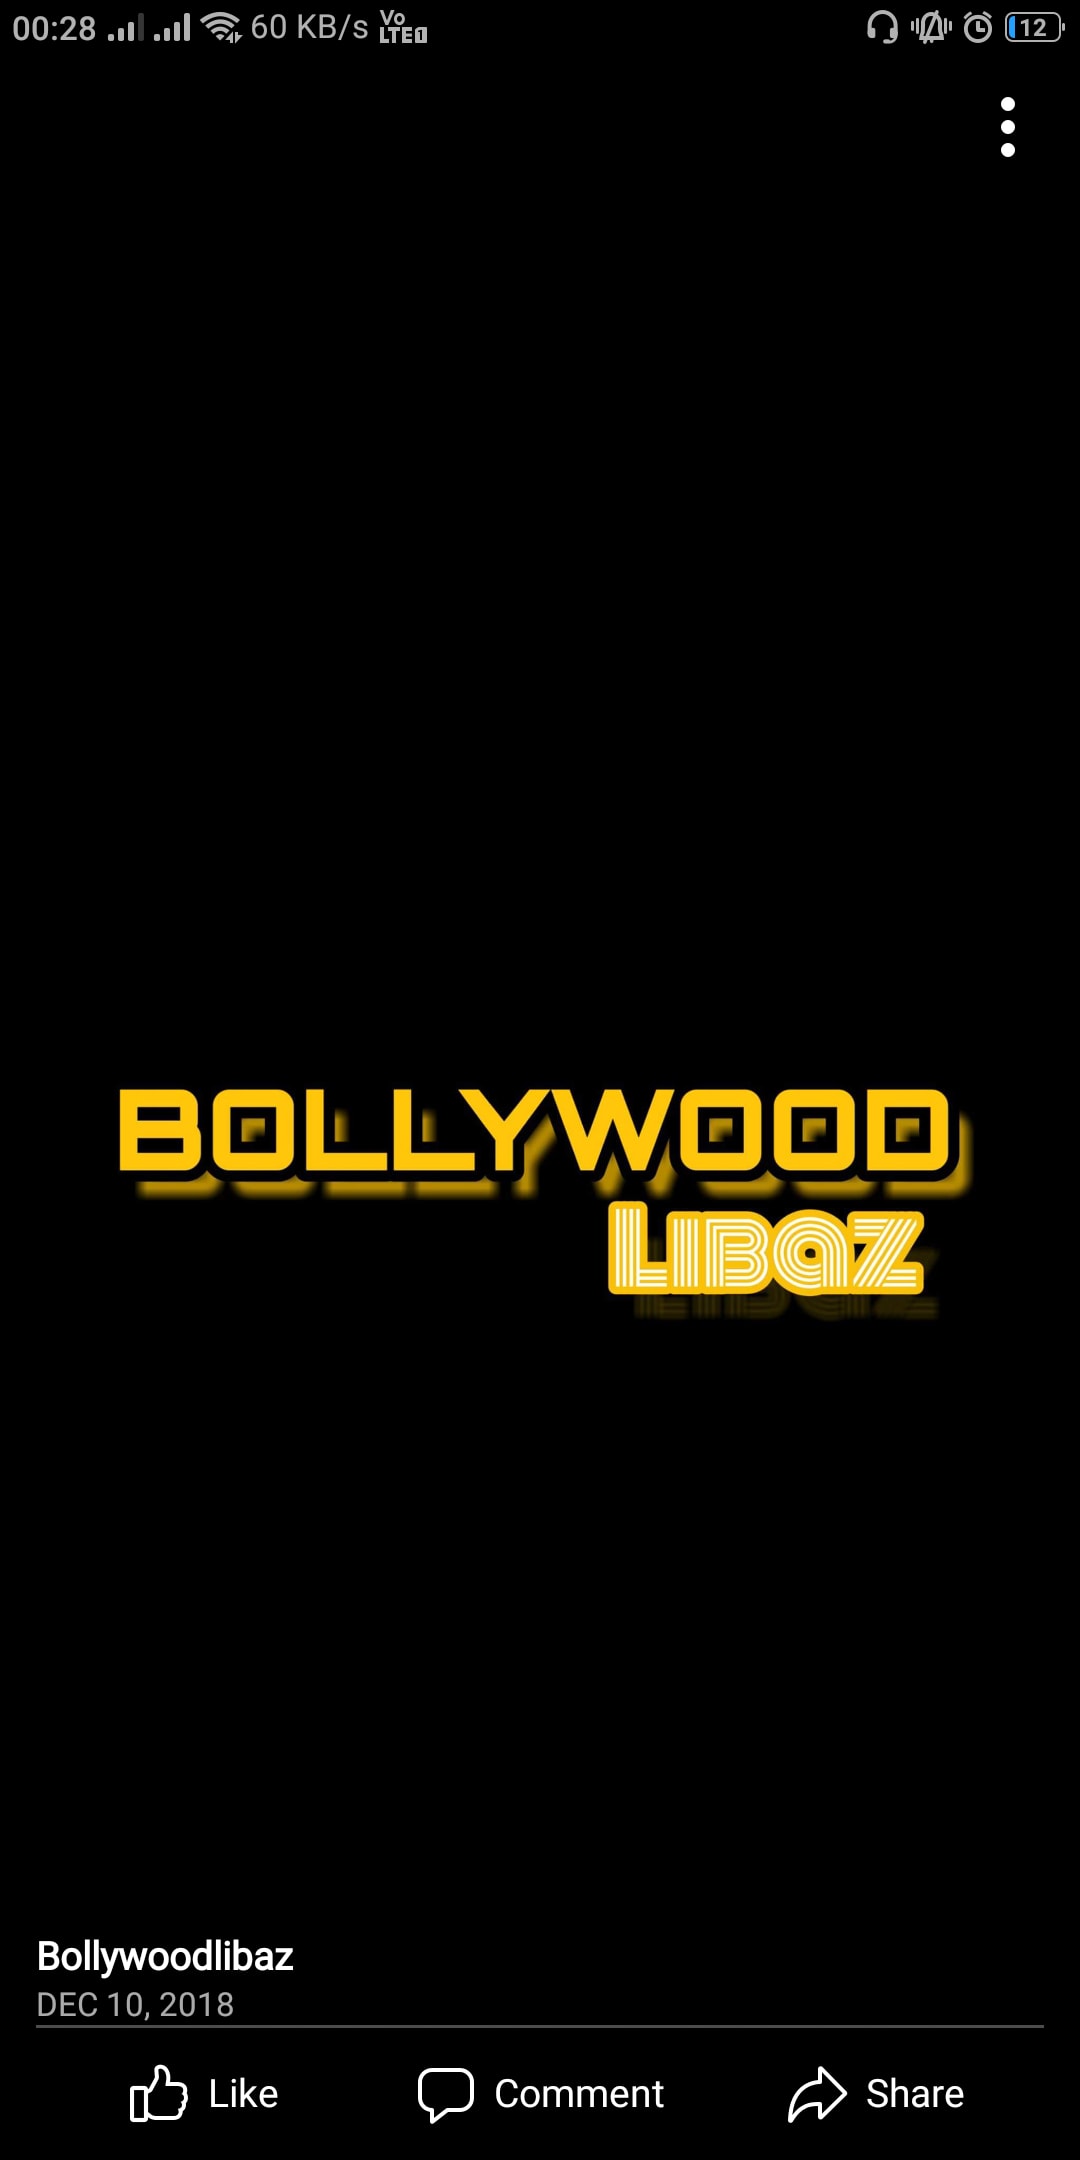 Bollywood Libaz